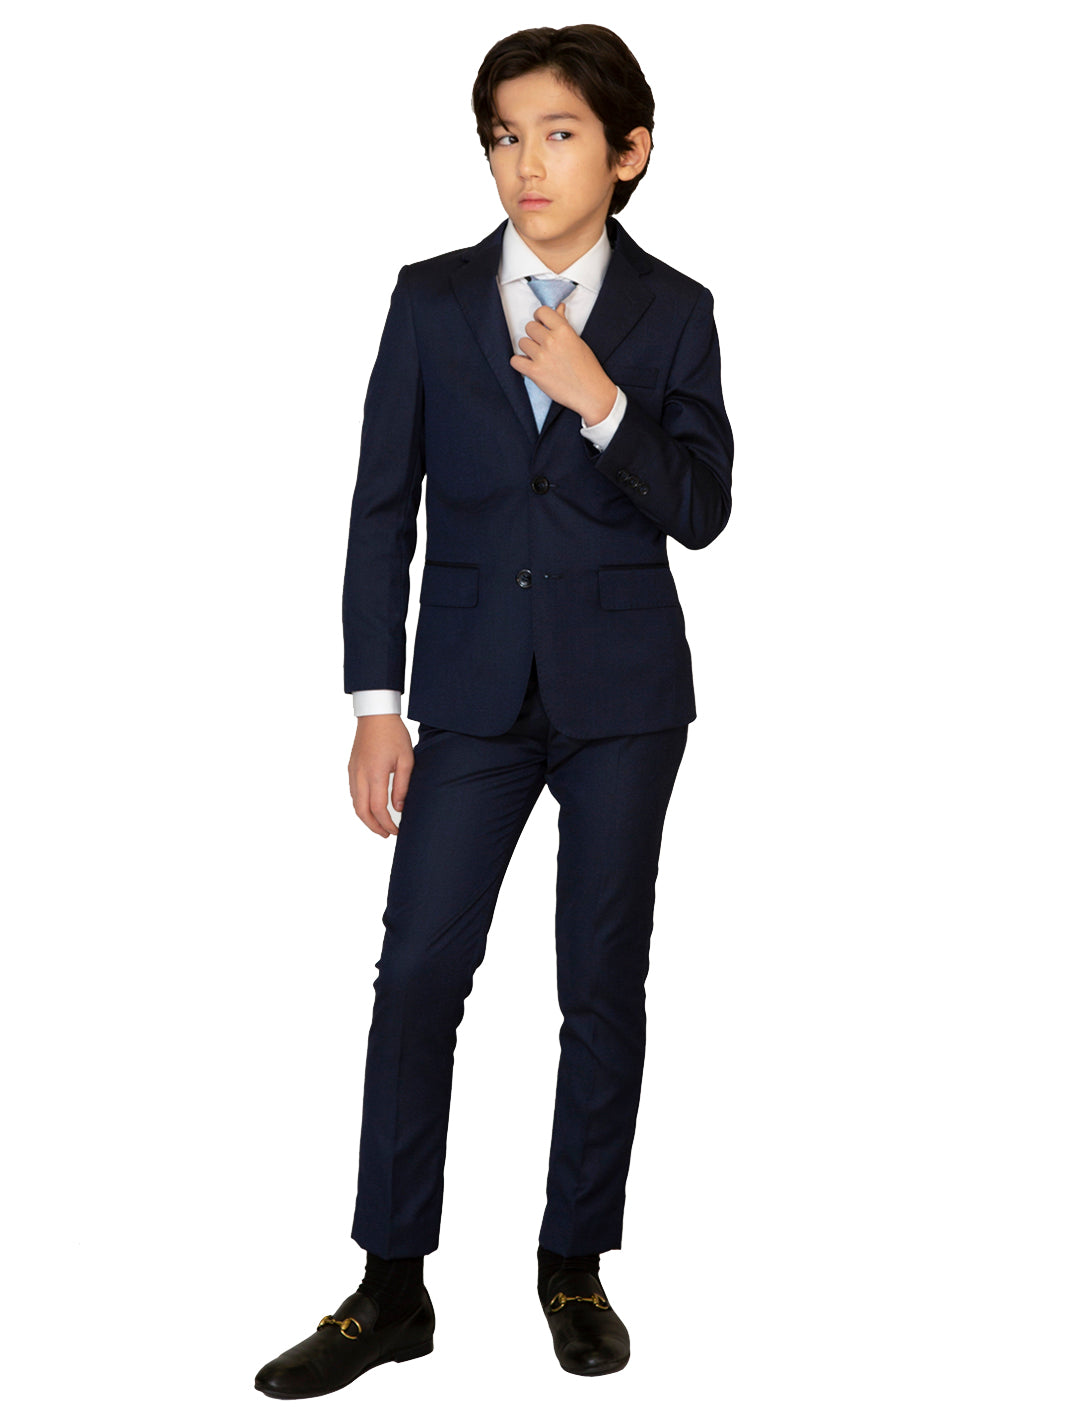 Black-on-Blue Suit